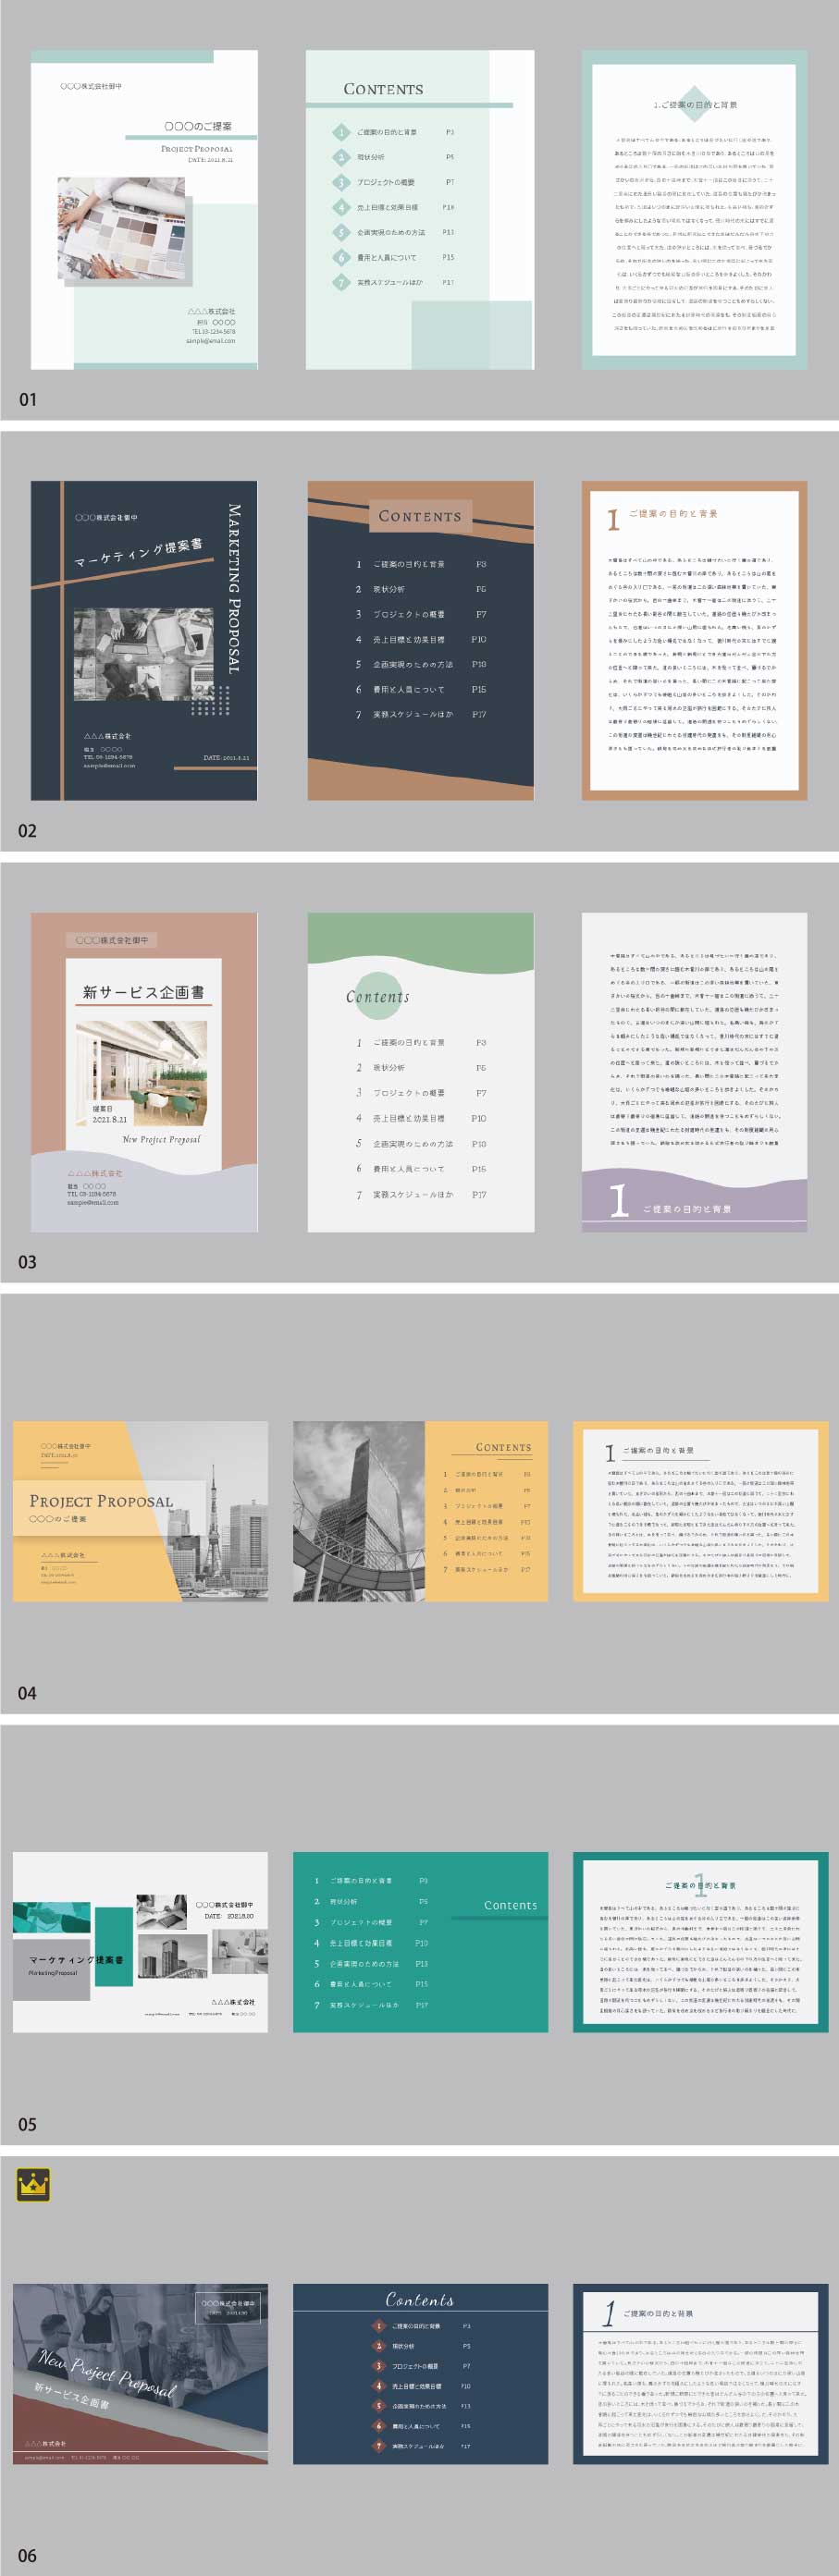 A4 document design template vol.3